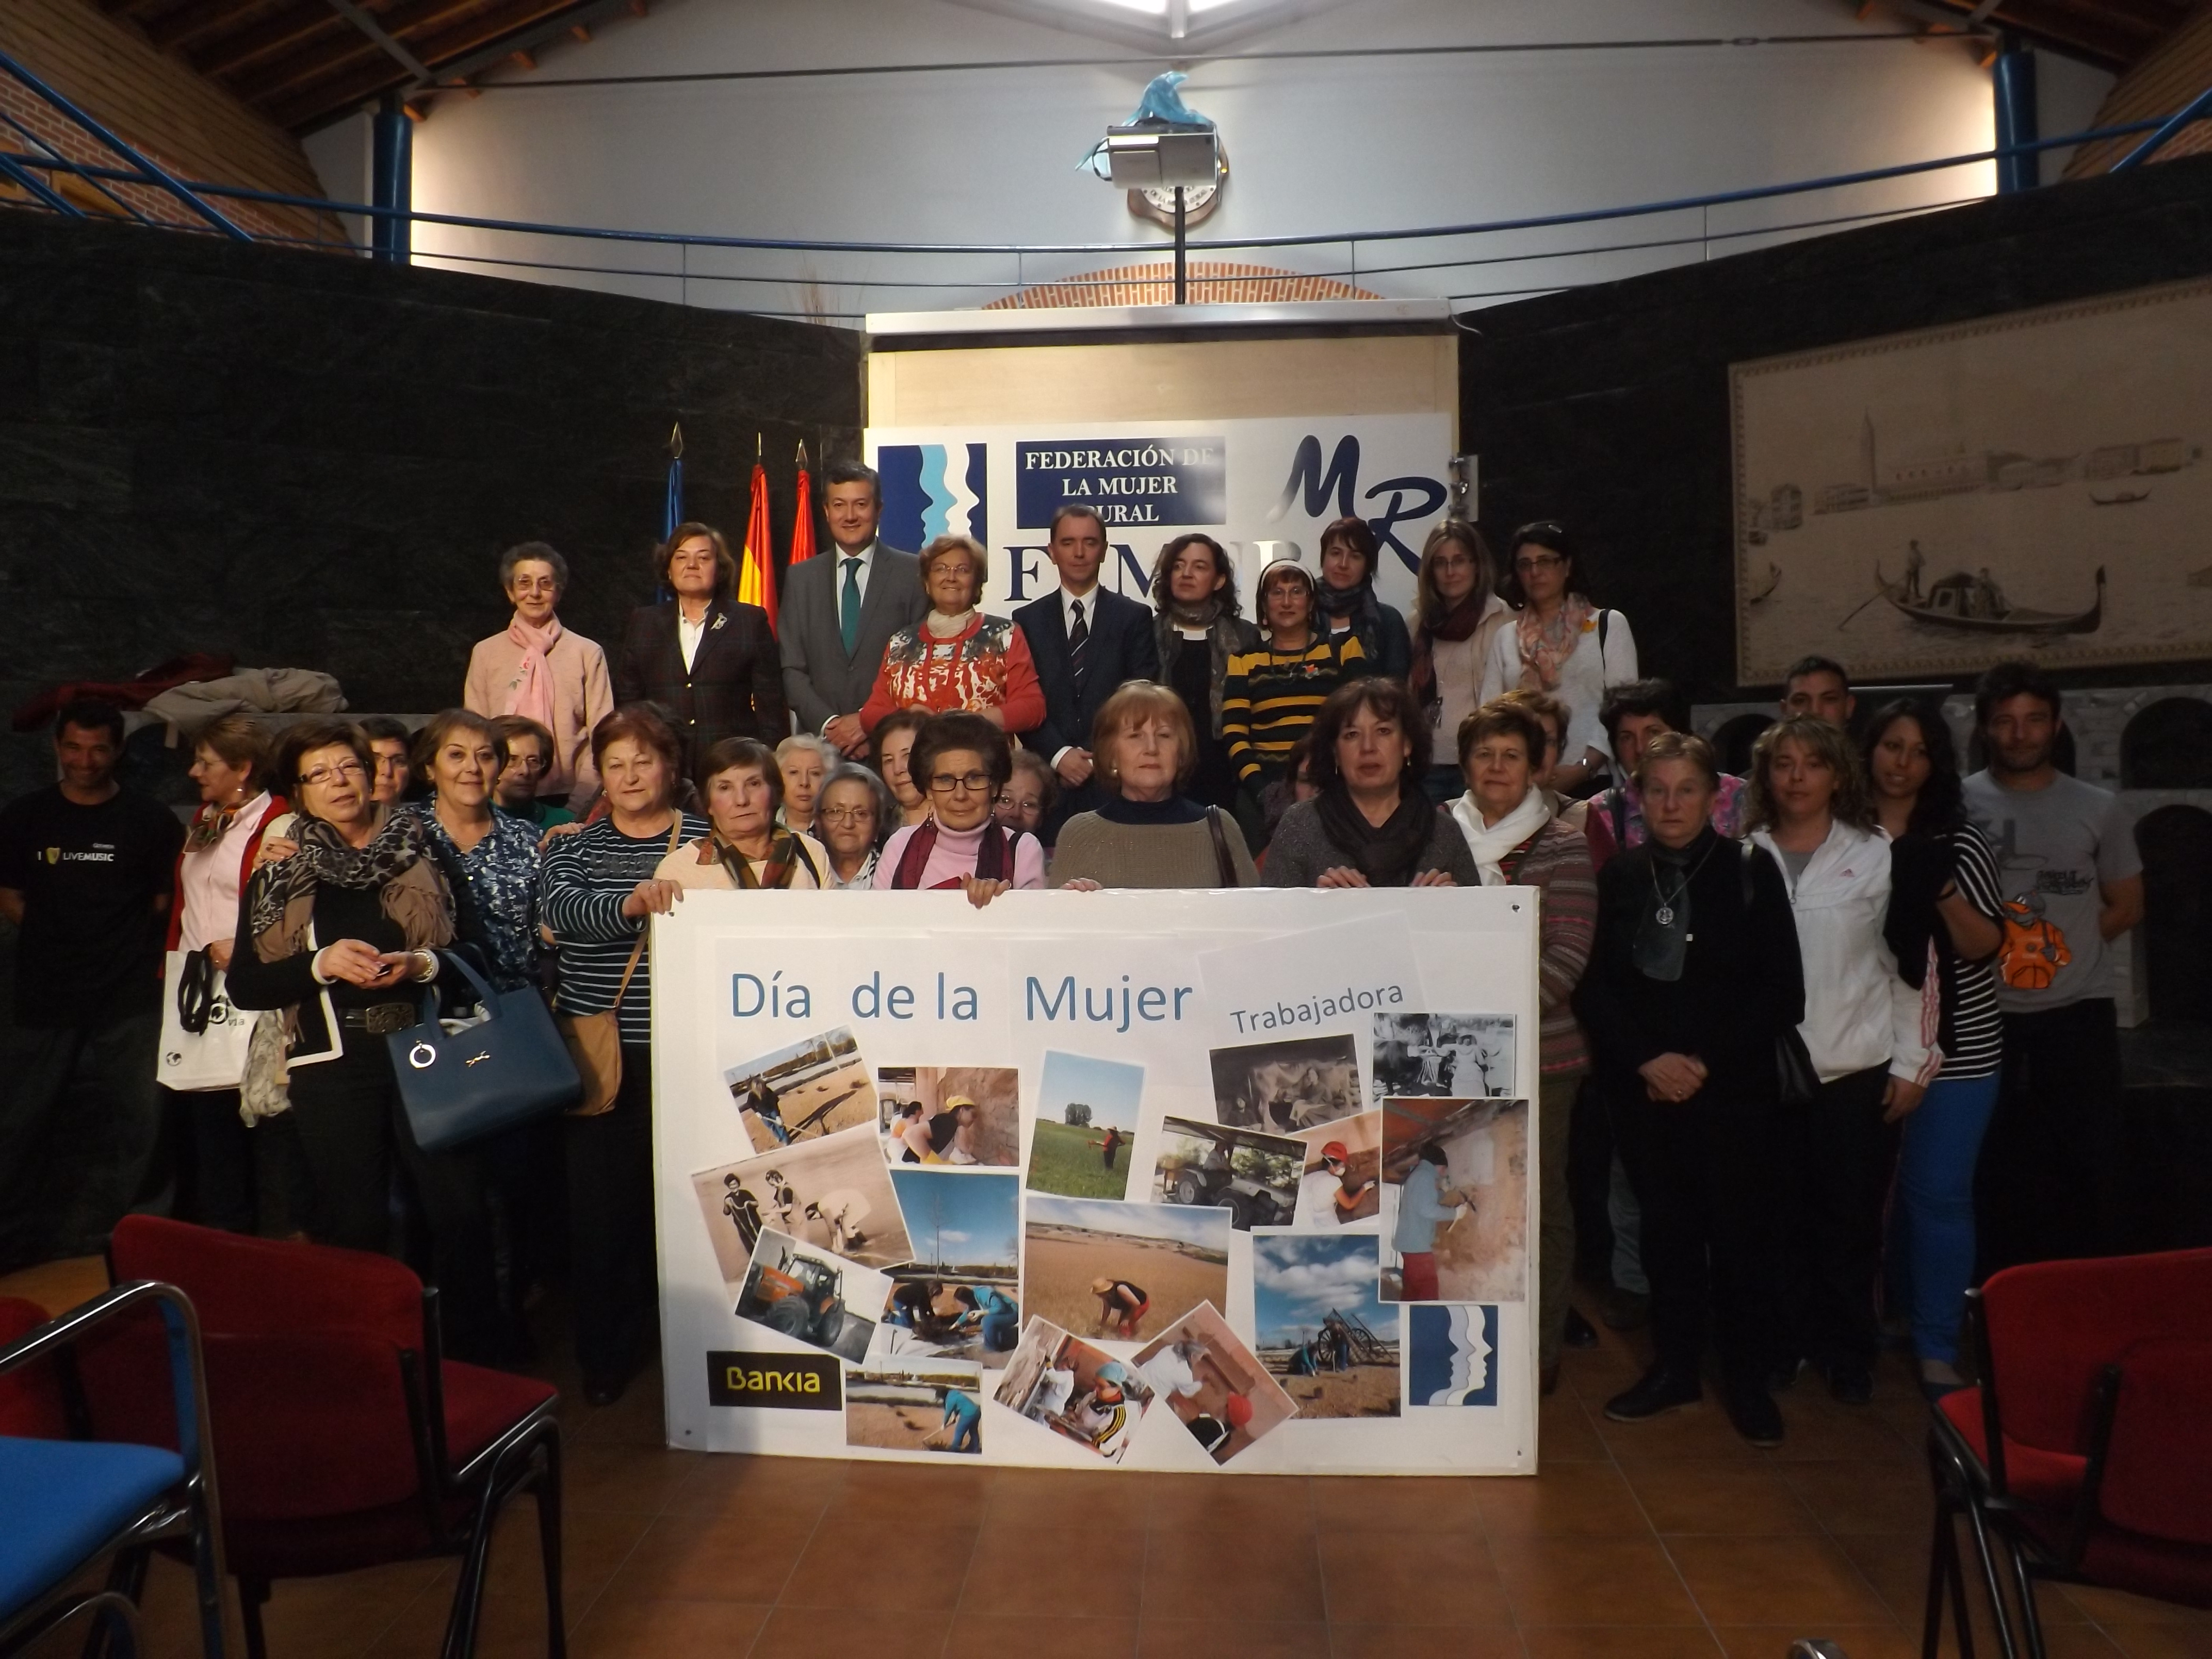 La Federación de la Mujer Rural celebró el Día de la Mujer en Hontalbilla